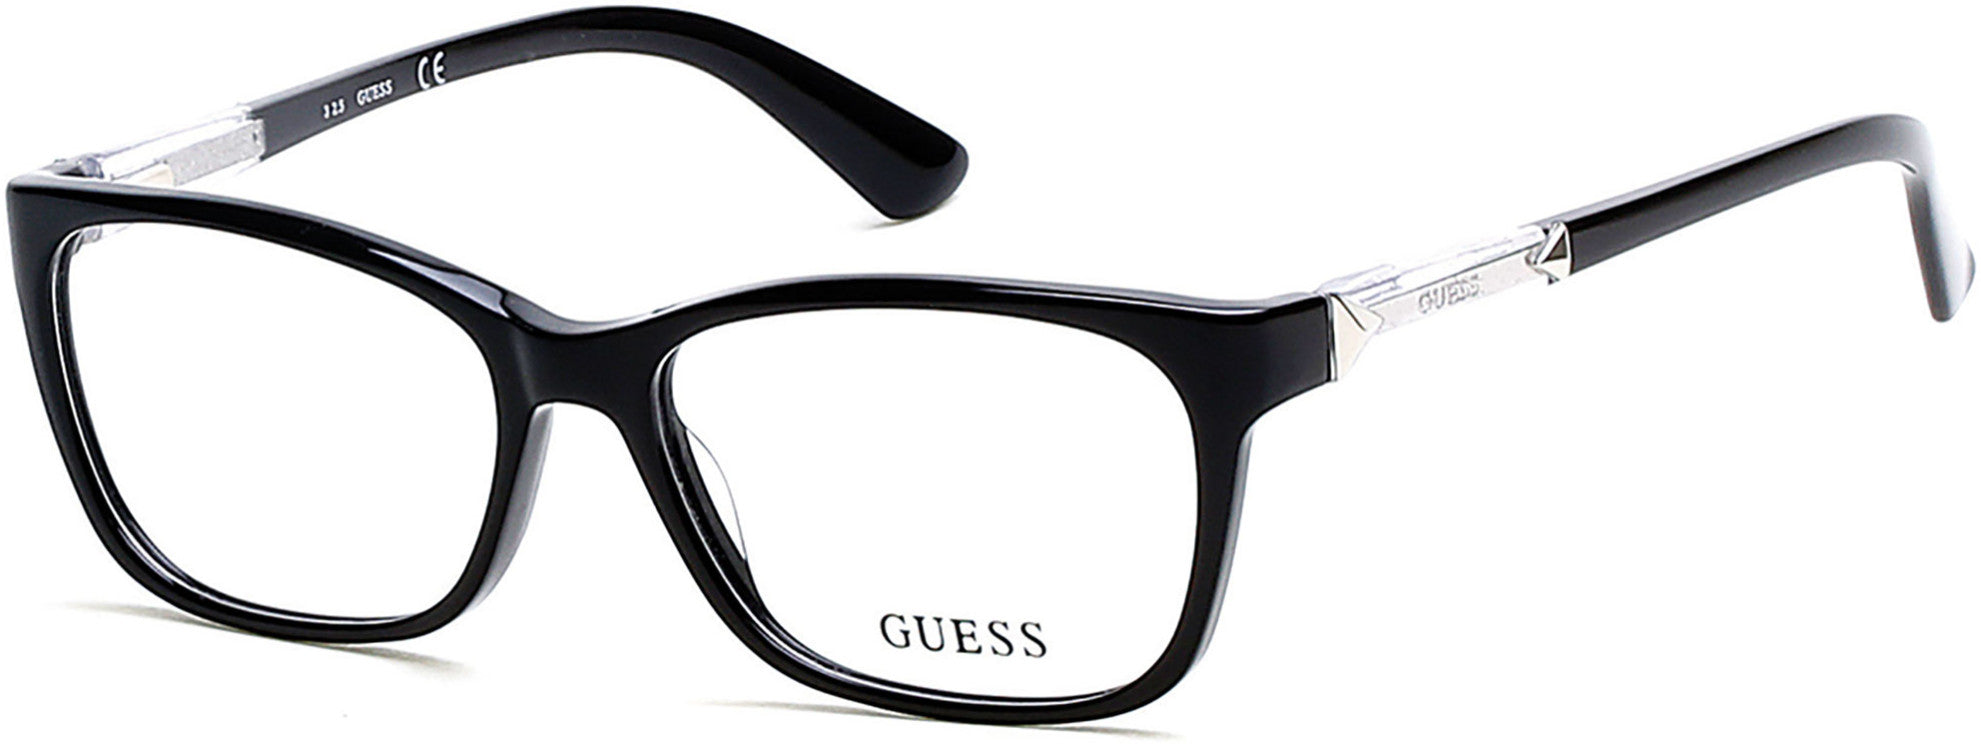 Guess GU2561-F Geometric Eyeglasses 001-001 - Shiny Black